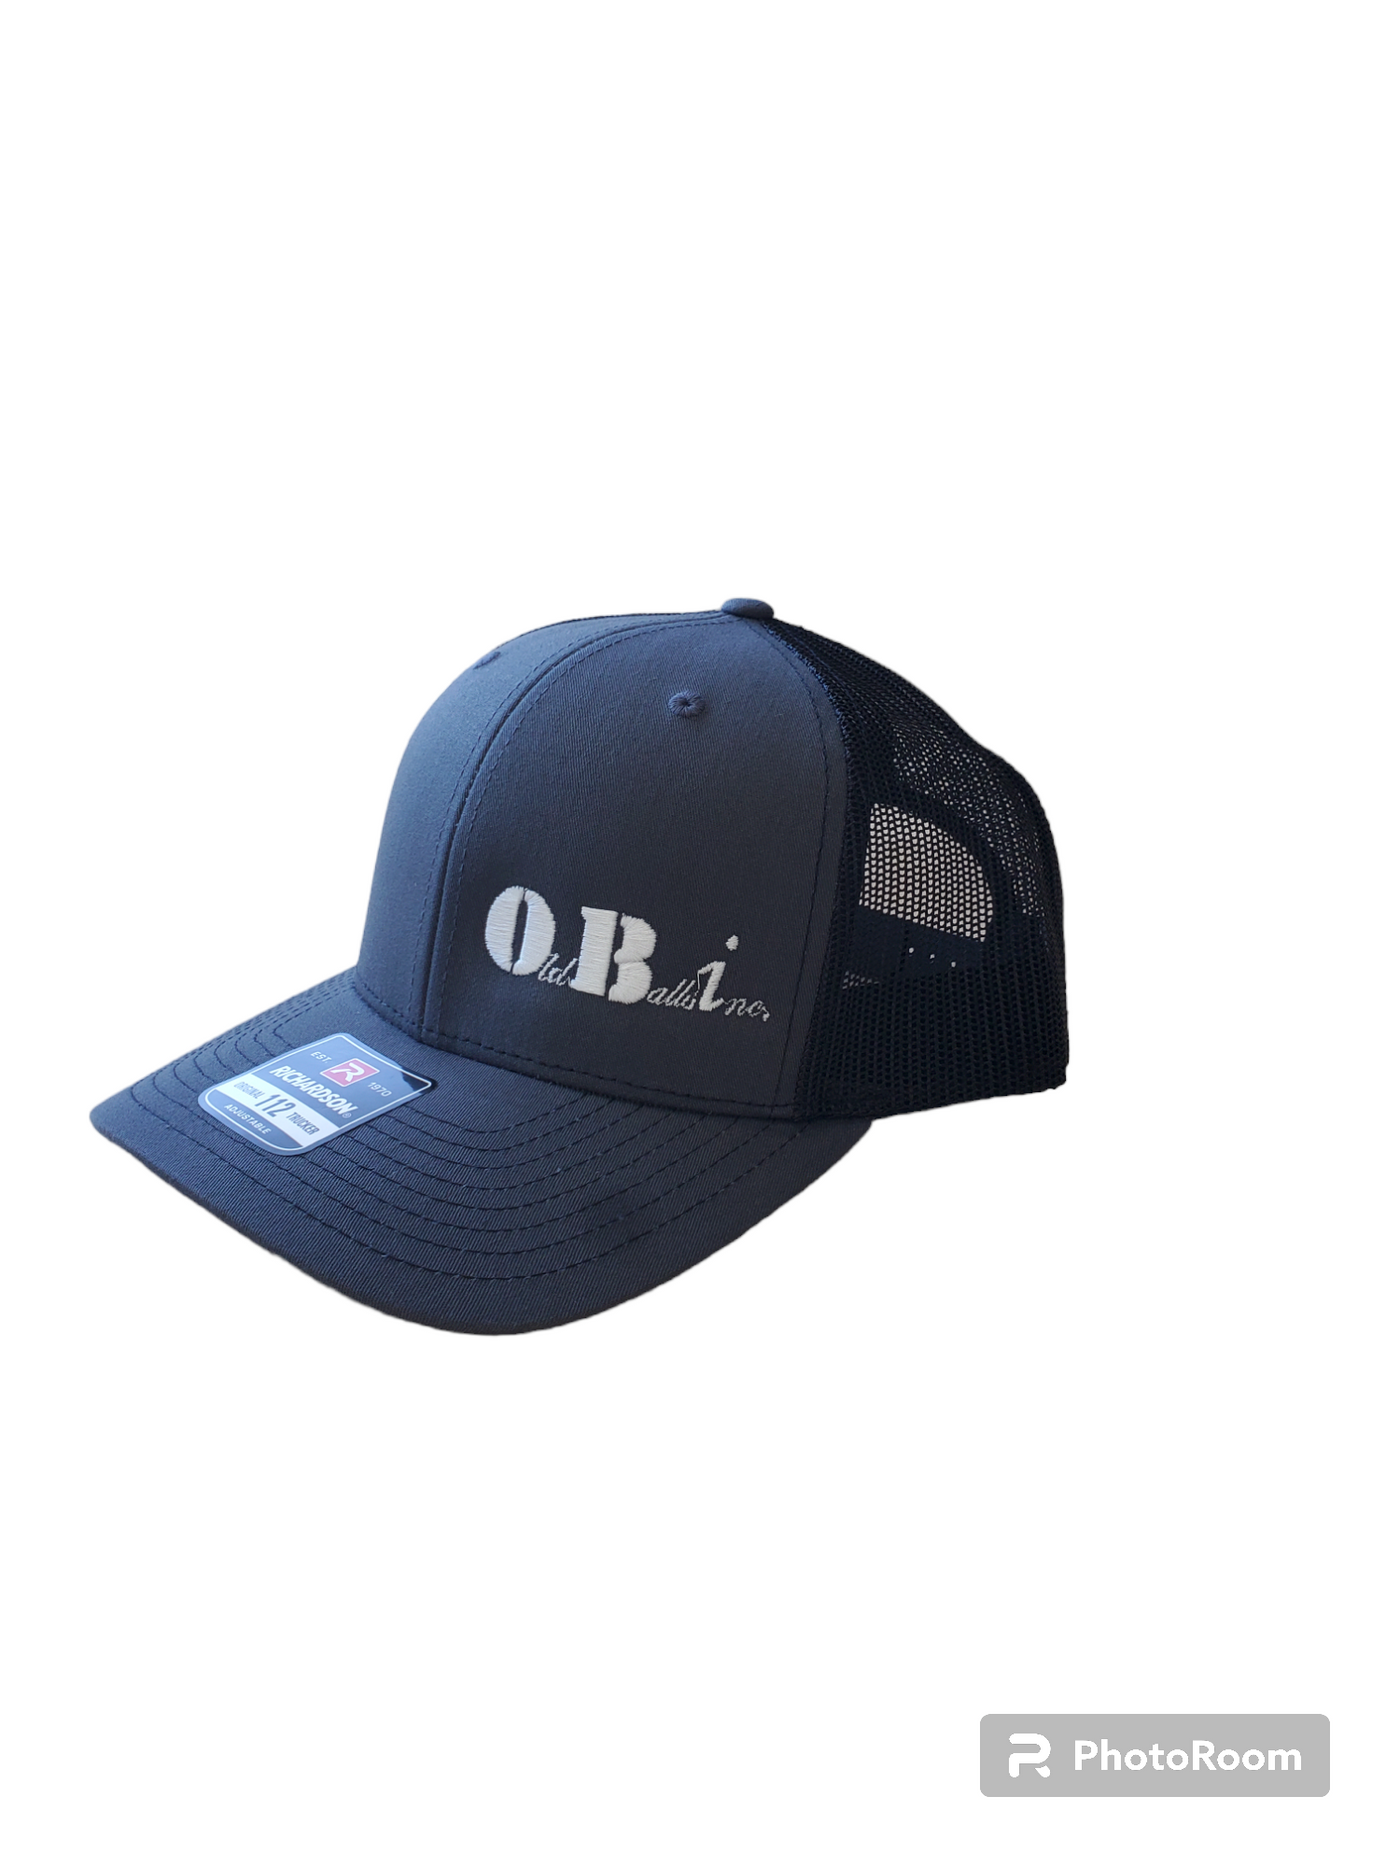 OBi HAT - Richardson 112 style